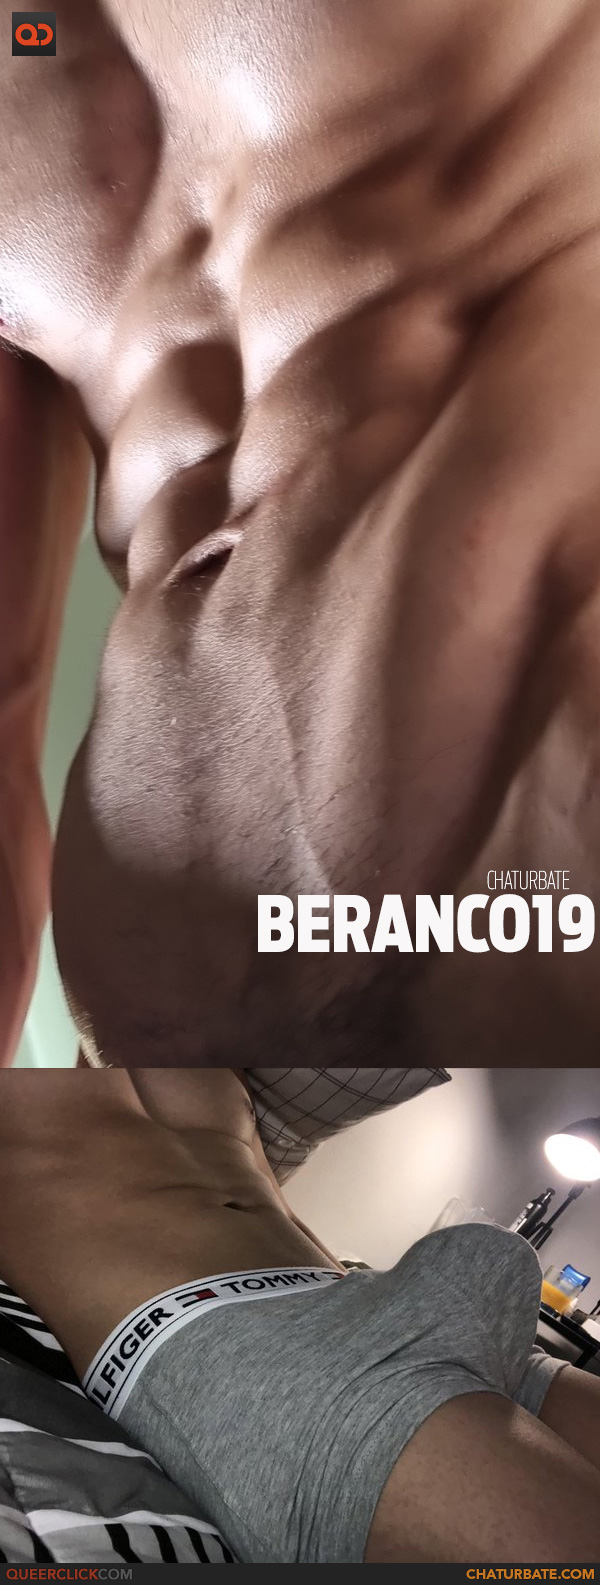 Chaturbate: Beranco19 - QueerClick